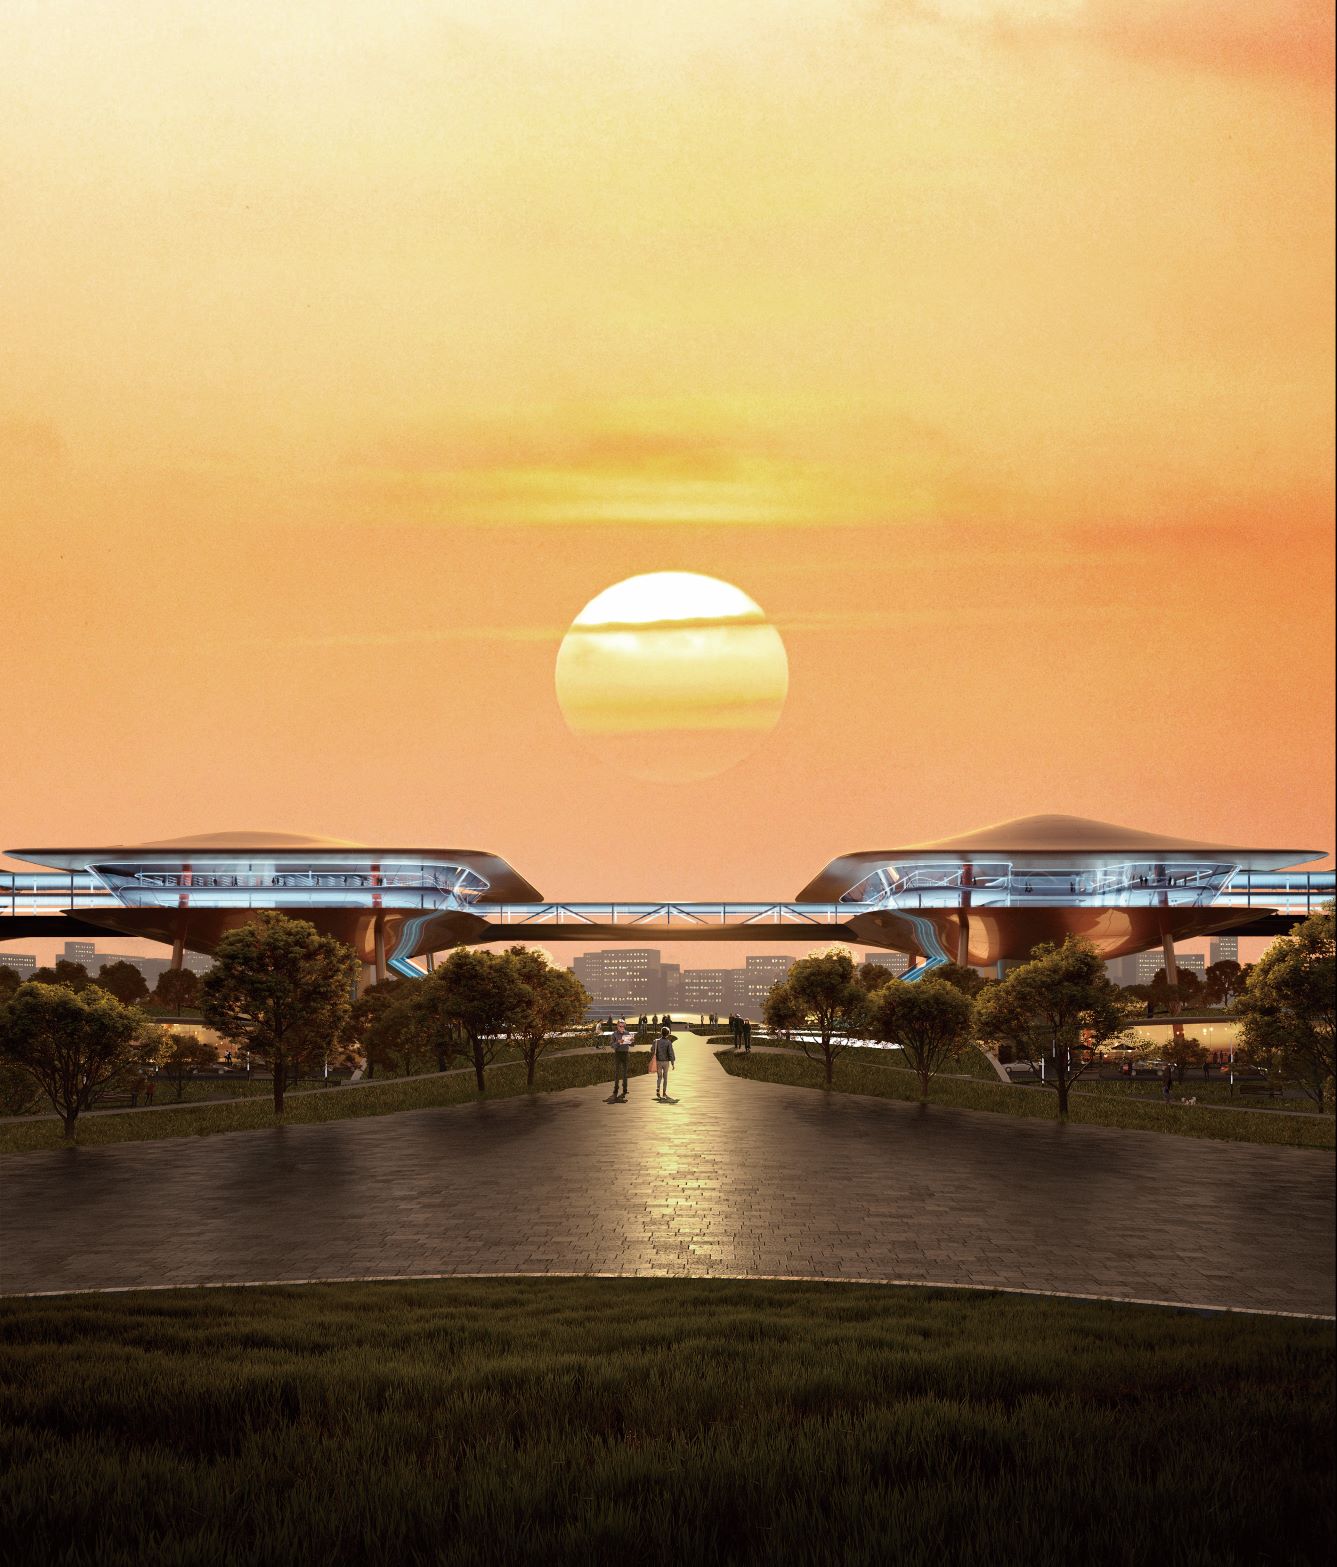 未來轉運站 - 架空科幻的行走城市